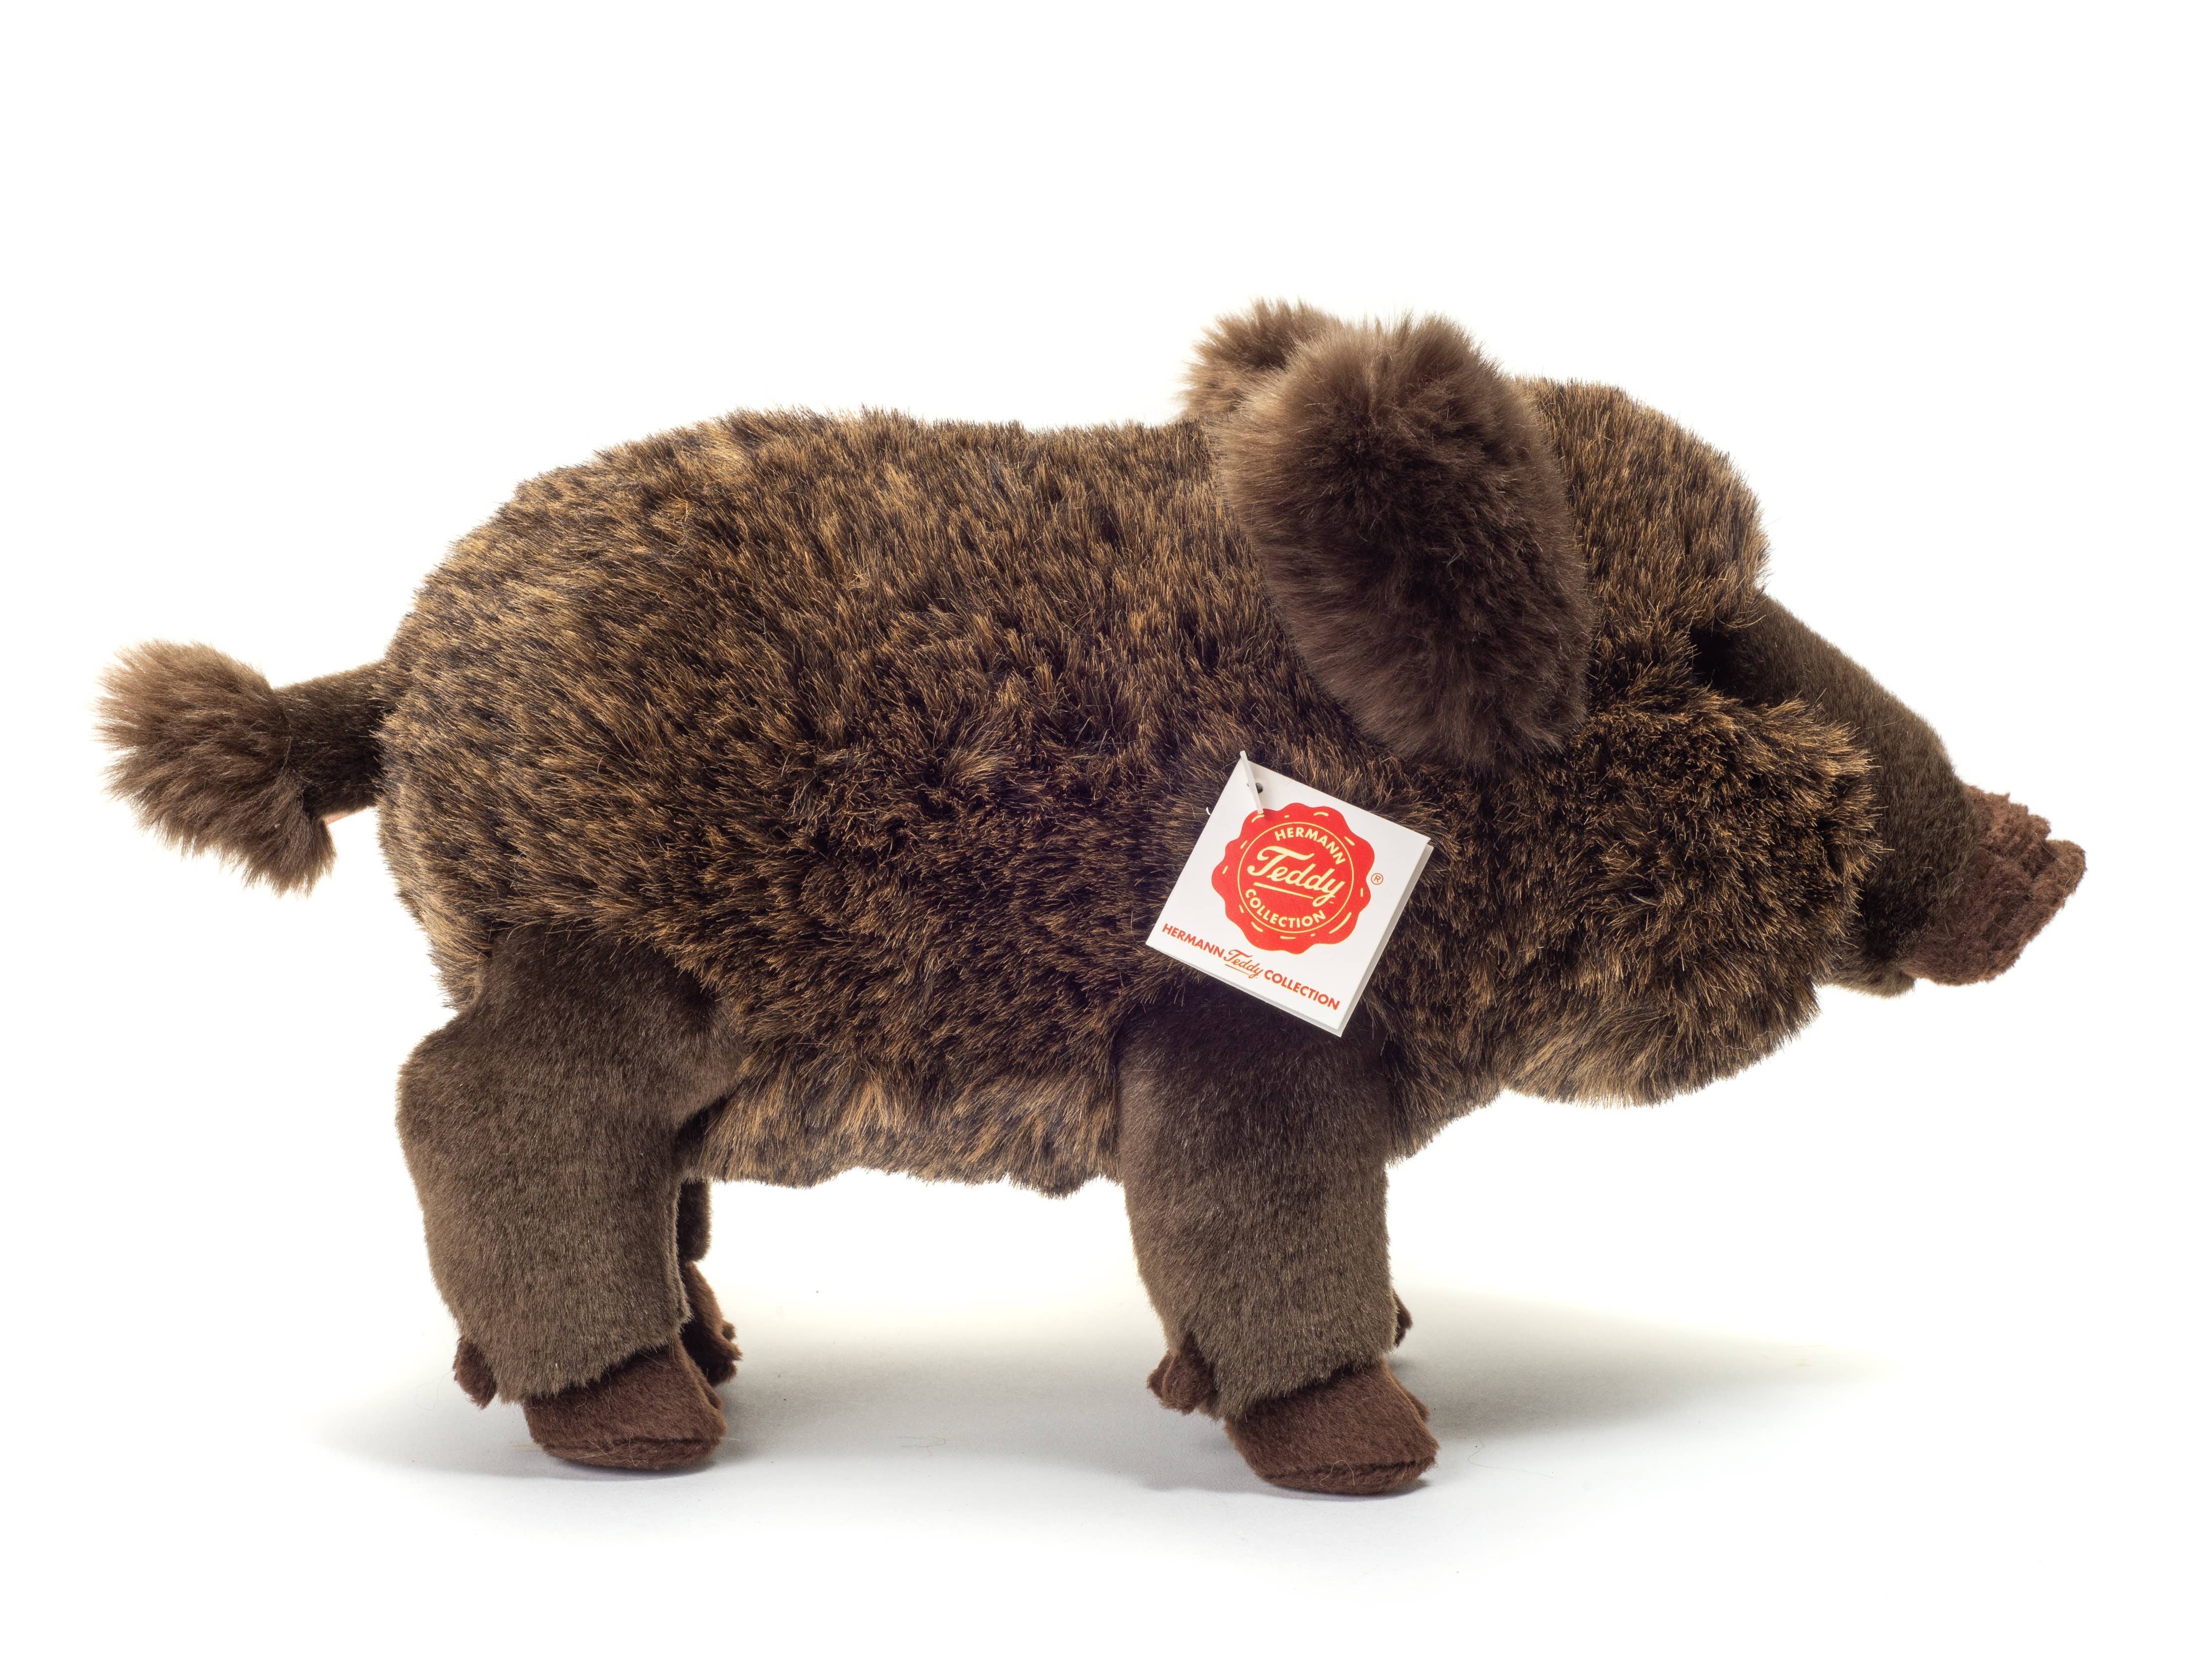 European Wild Boar 30 cm Fluffy Plush Animal by Teddy Hermann